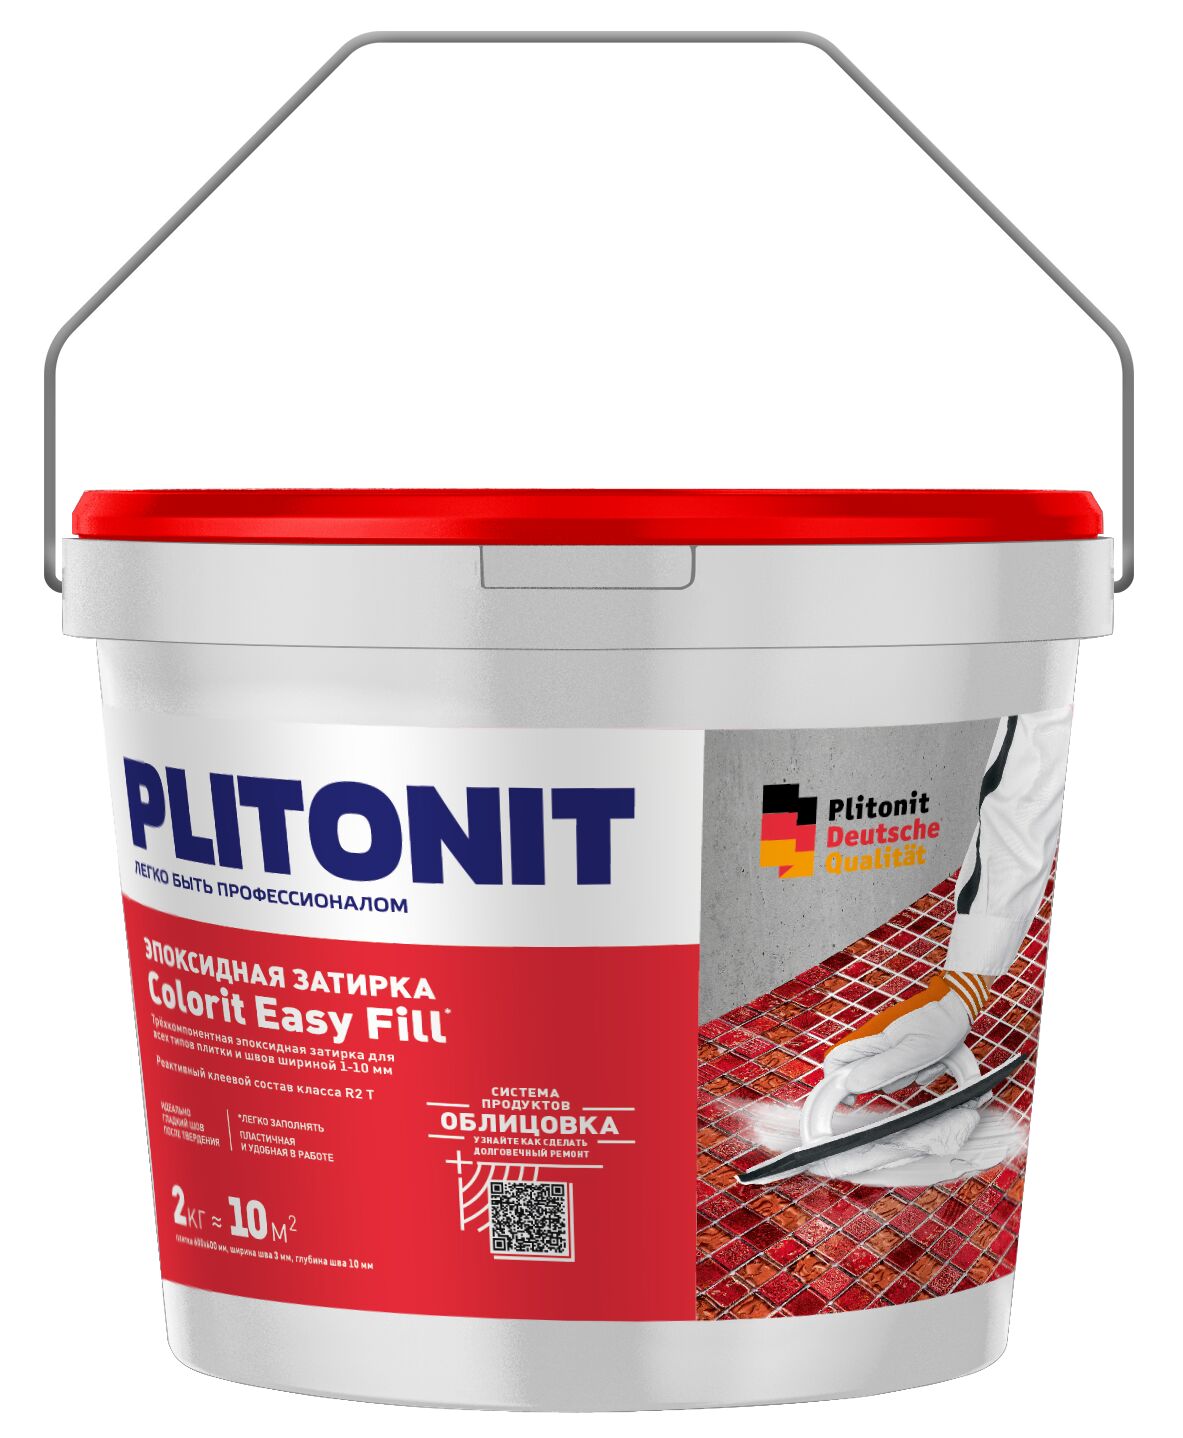 PLITONIT Colorit EasyFill СЕРЫЙ - 2 эпоксидная затирка для межплиточных швов и реактивный клей для плитки , PLITONIT Colorit EasyFill СЕРЫЙ - 2 эпоксидная затирка для межплиточных швов и реактивный клей для плитки 